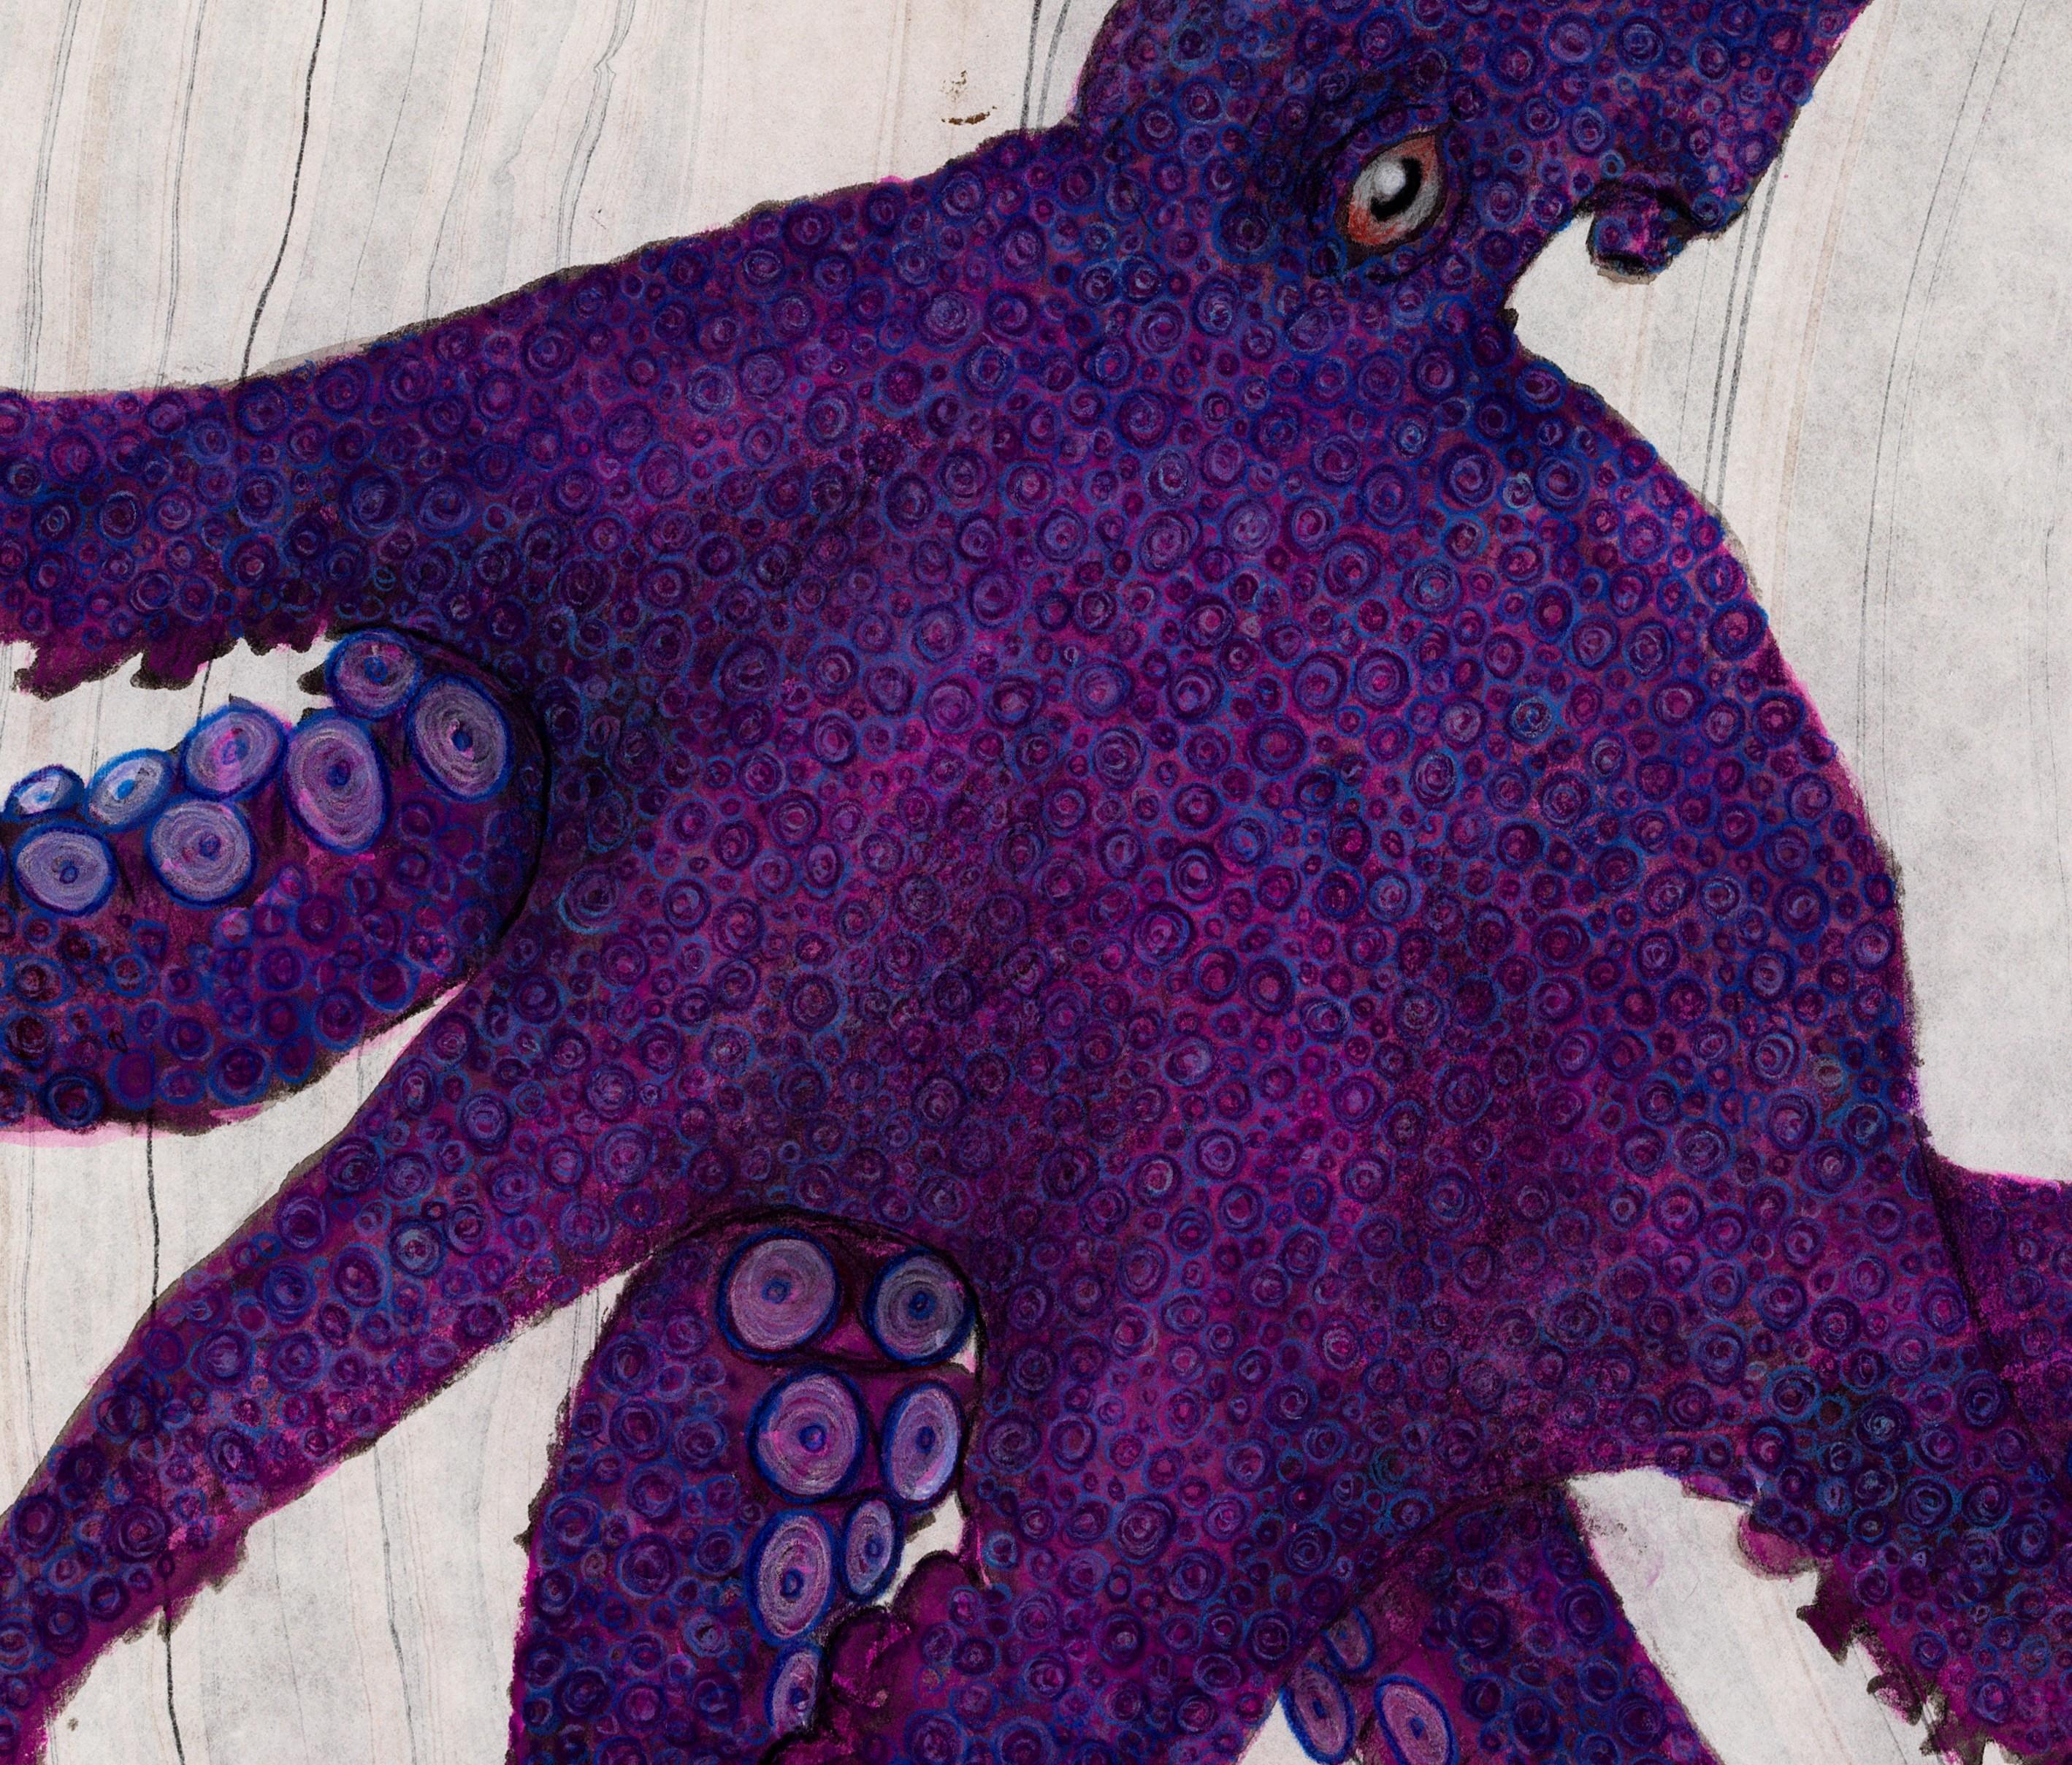 Grape of Wrath – japanisches Sumi-Tintegemälde im Gyotaku-Stil, großes lila Octopus im Gyotaku-Stil (Zeitgenössisch), Art, von Jeff Conroy